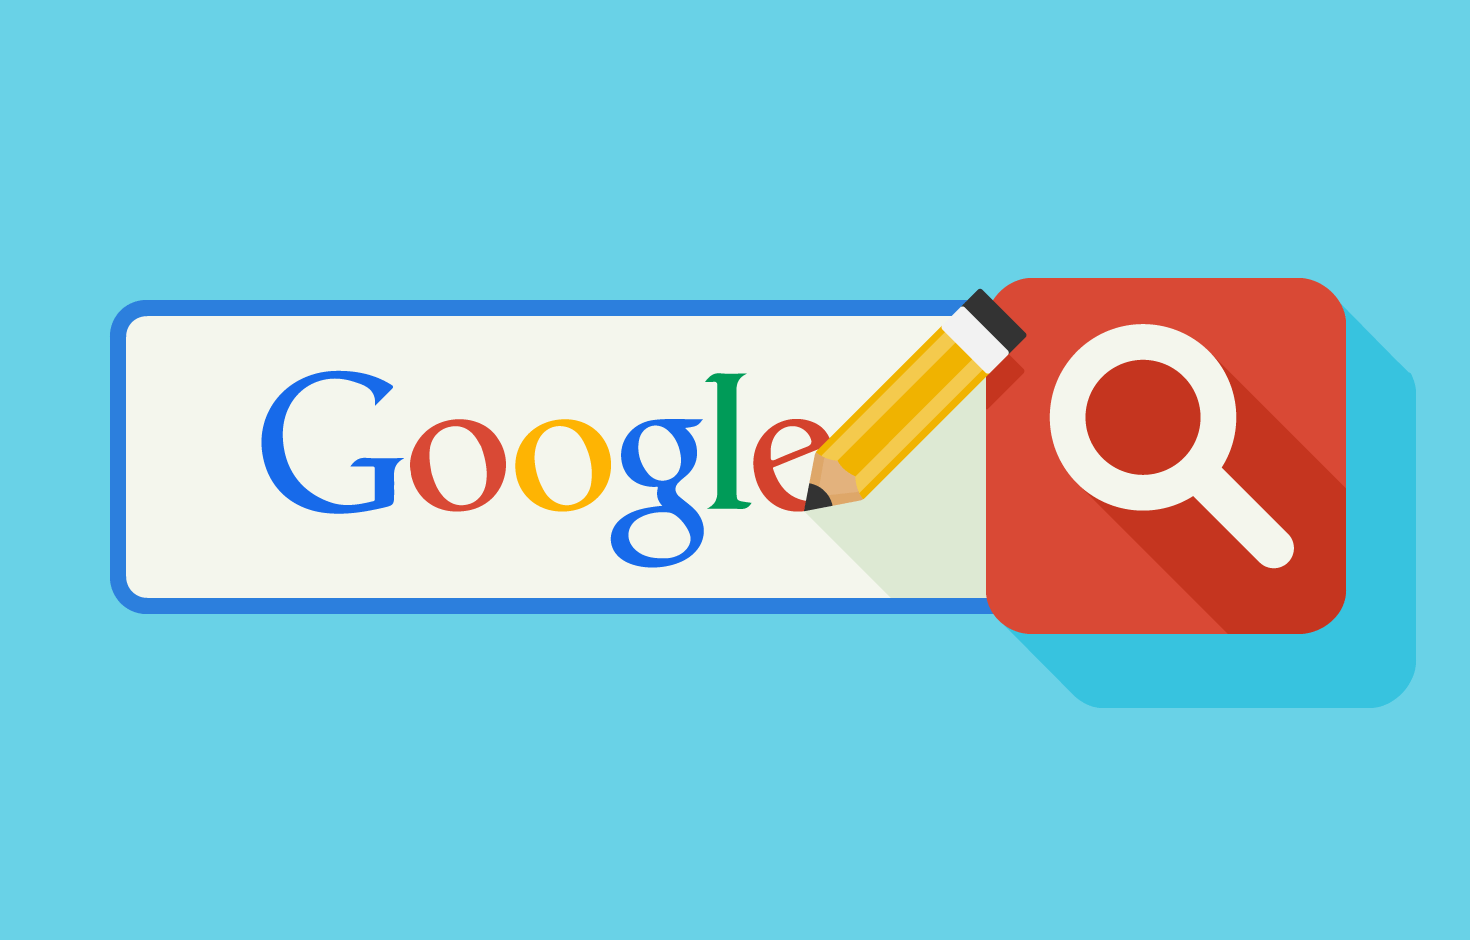 Google Search agrega pestaña personal en búsquedas